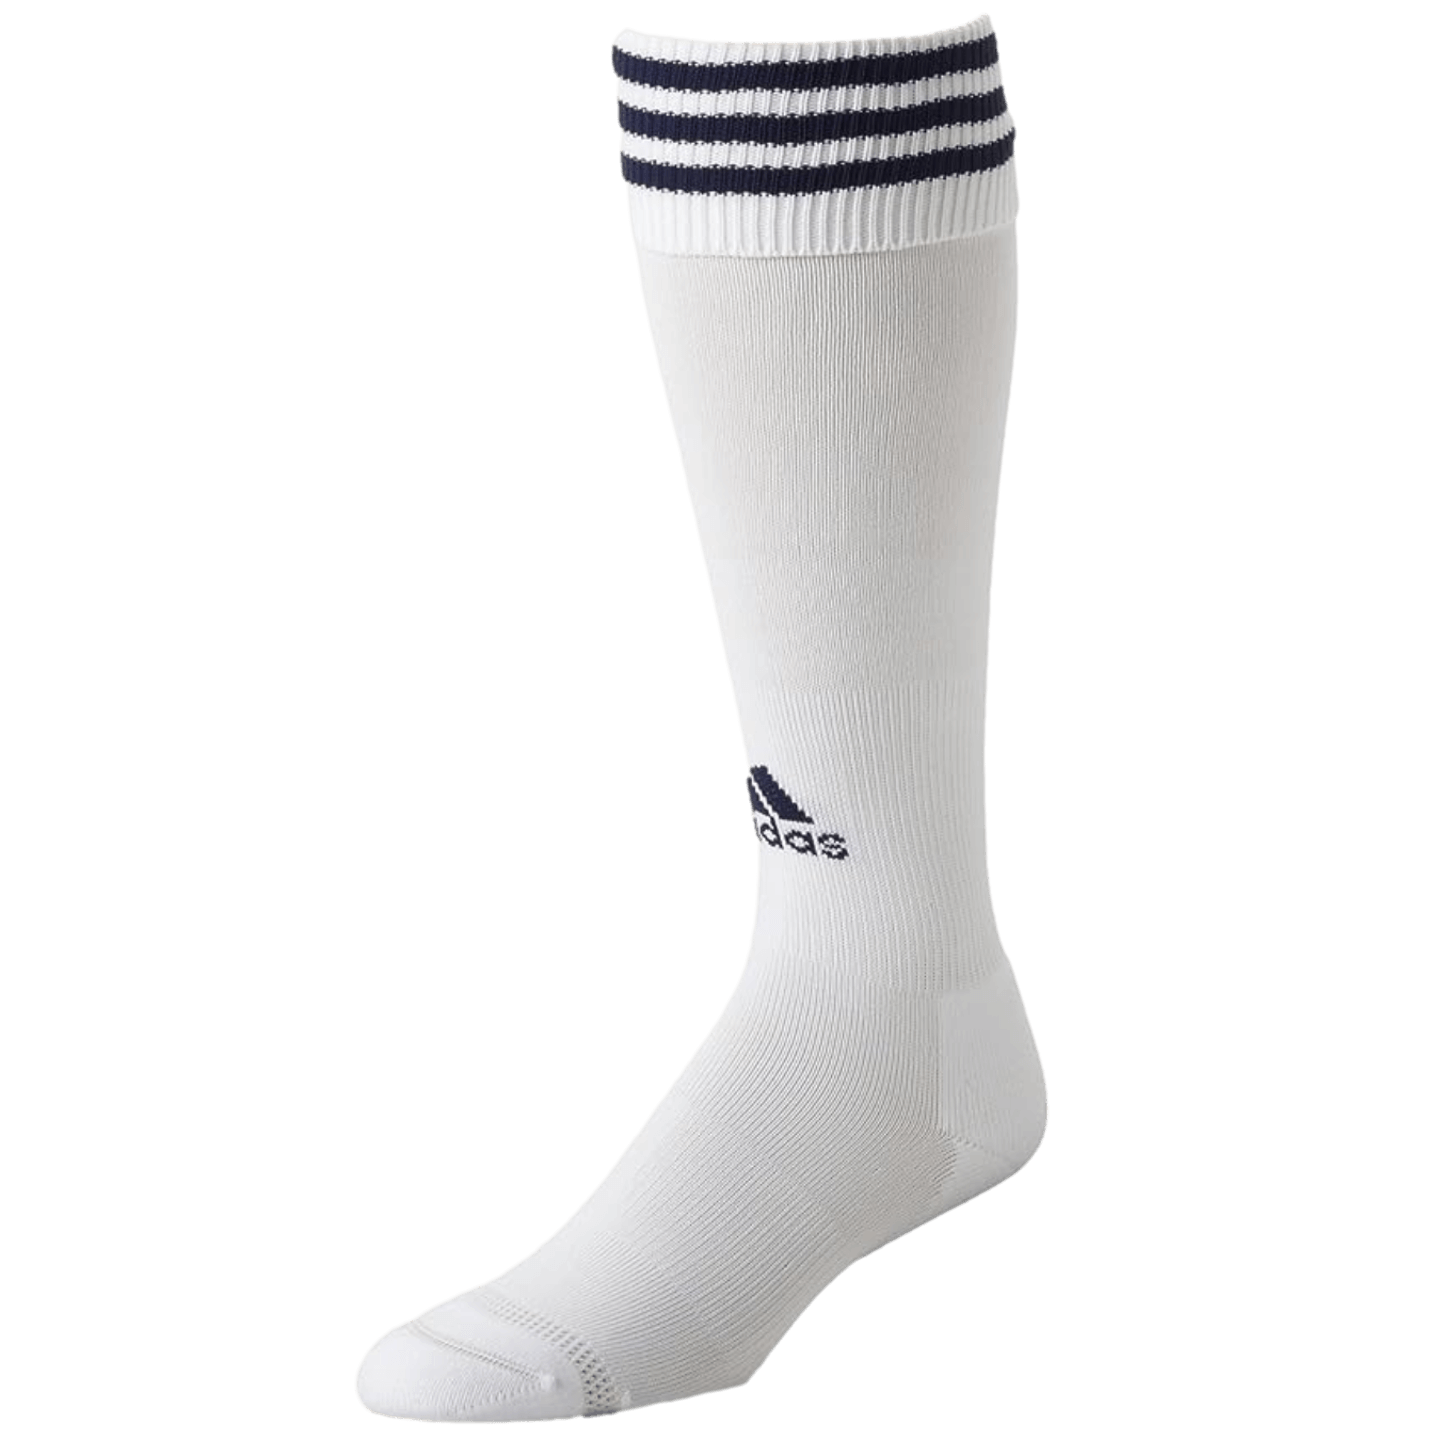 Adidas Copa Zone Cushion Socks